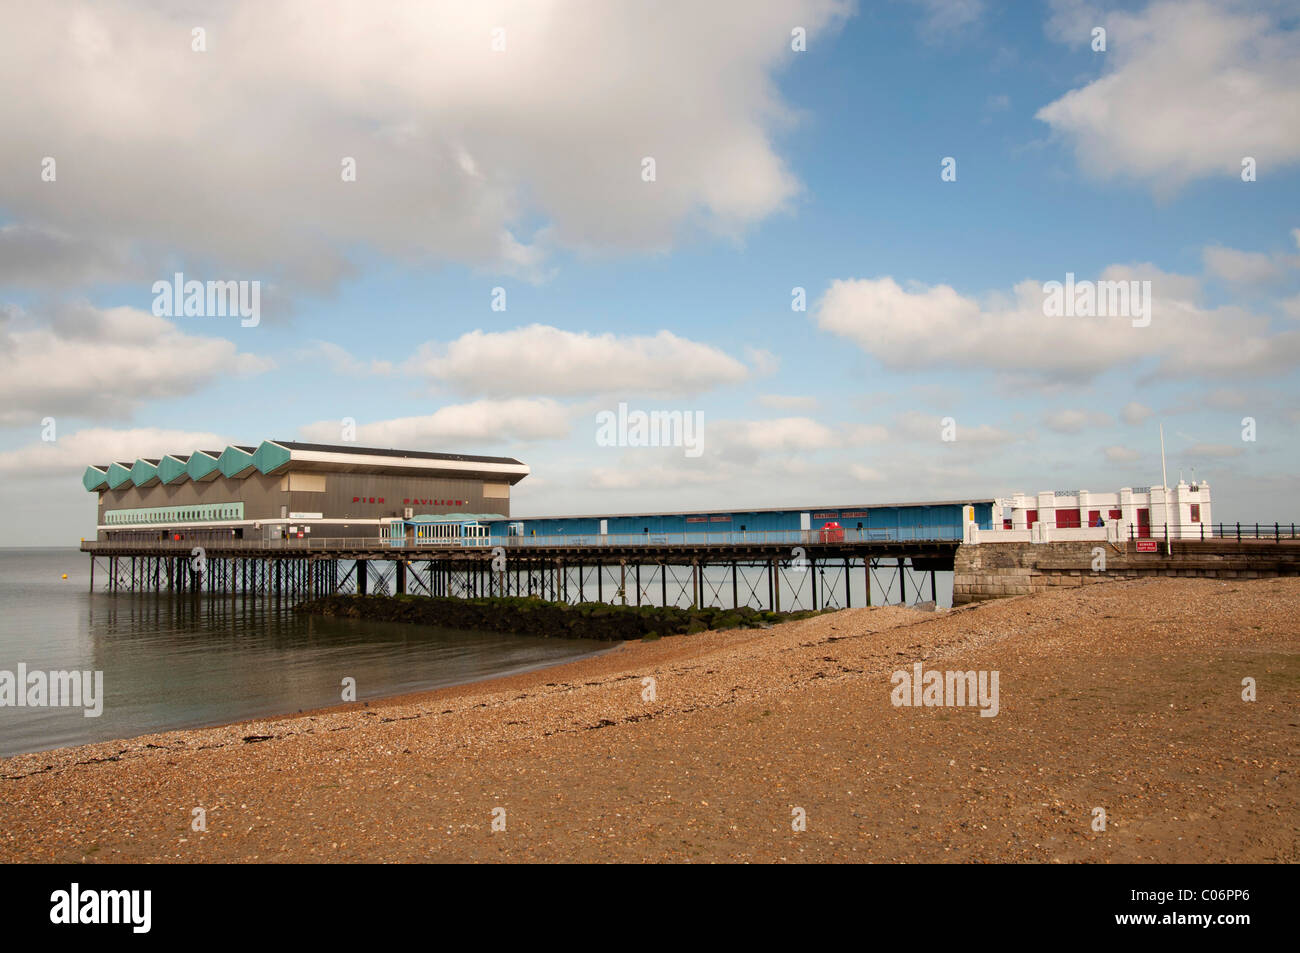 Pier-Pavillon Herne Bay Küstenstadt im Norden Kent England Großbritannien das einzige Teil, der noch verwendet, der die ursprüngliche Pier, die einst die s Stockfoto